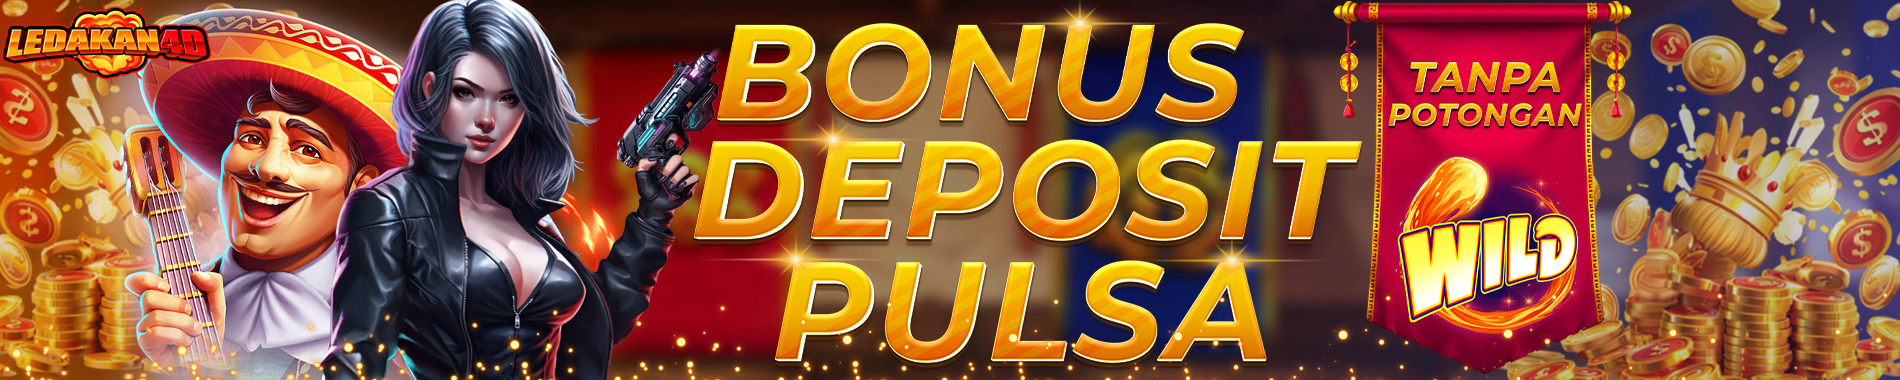 Bonus-Deposit-Pulsa-Tanpa-Potongan-LEDAKAN4D